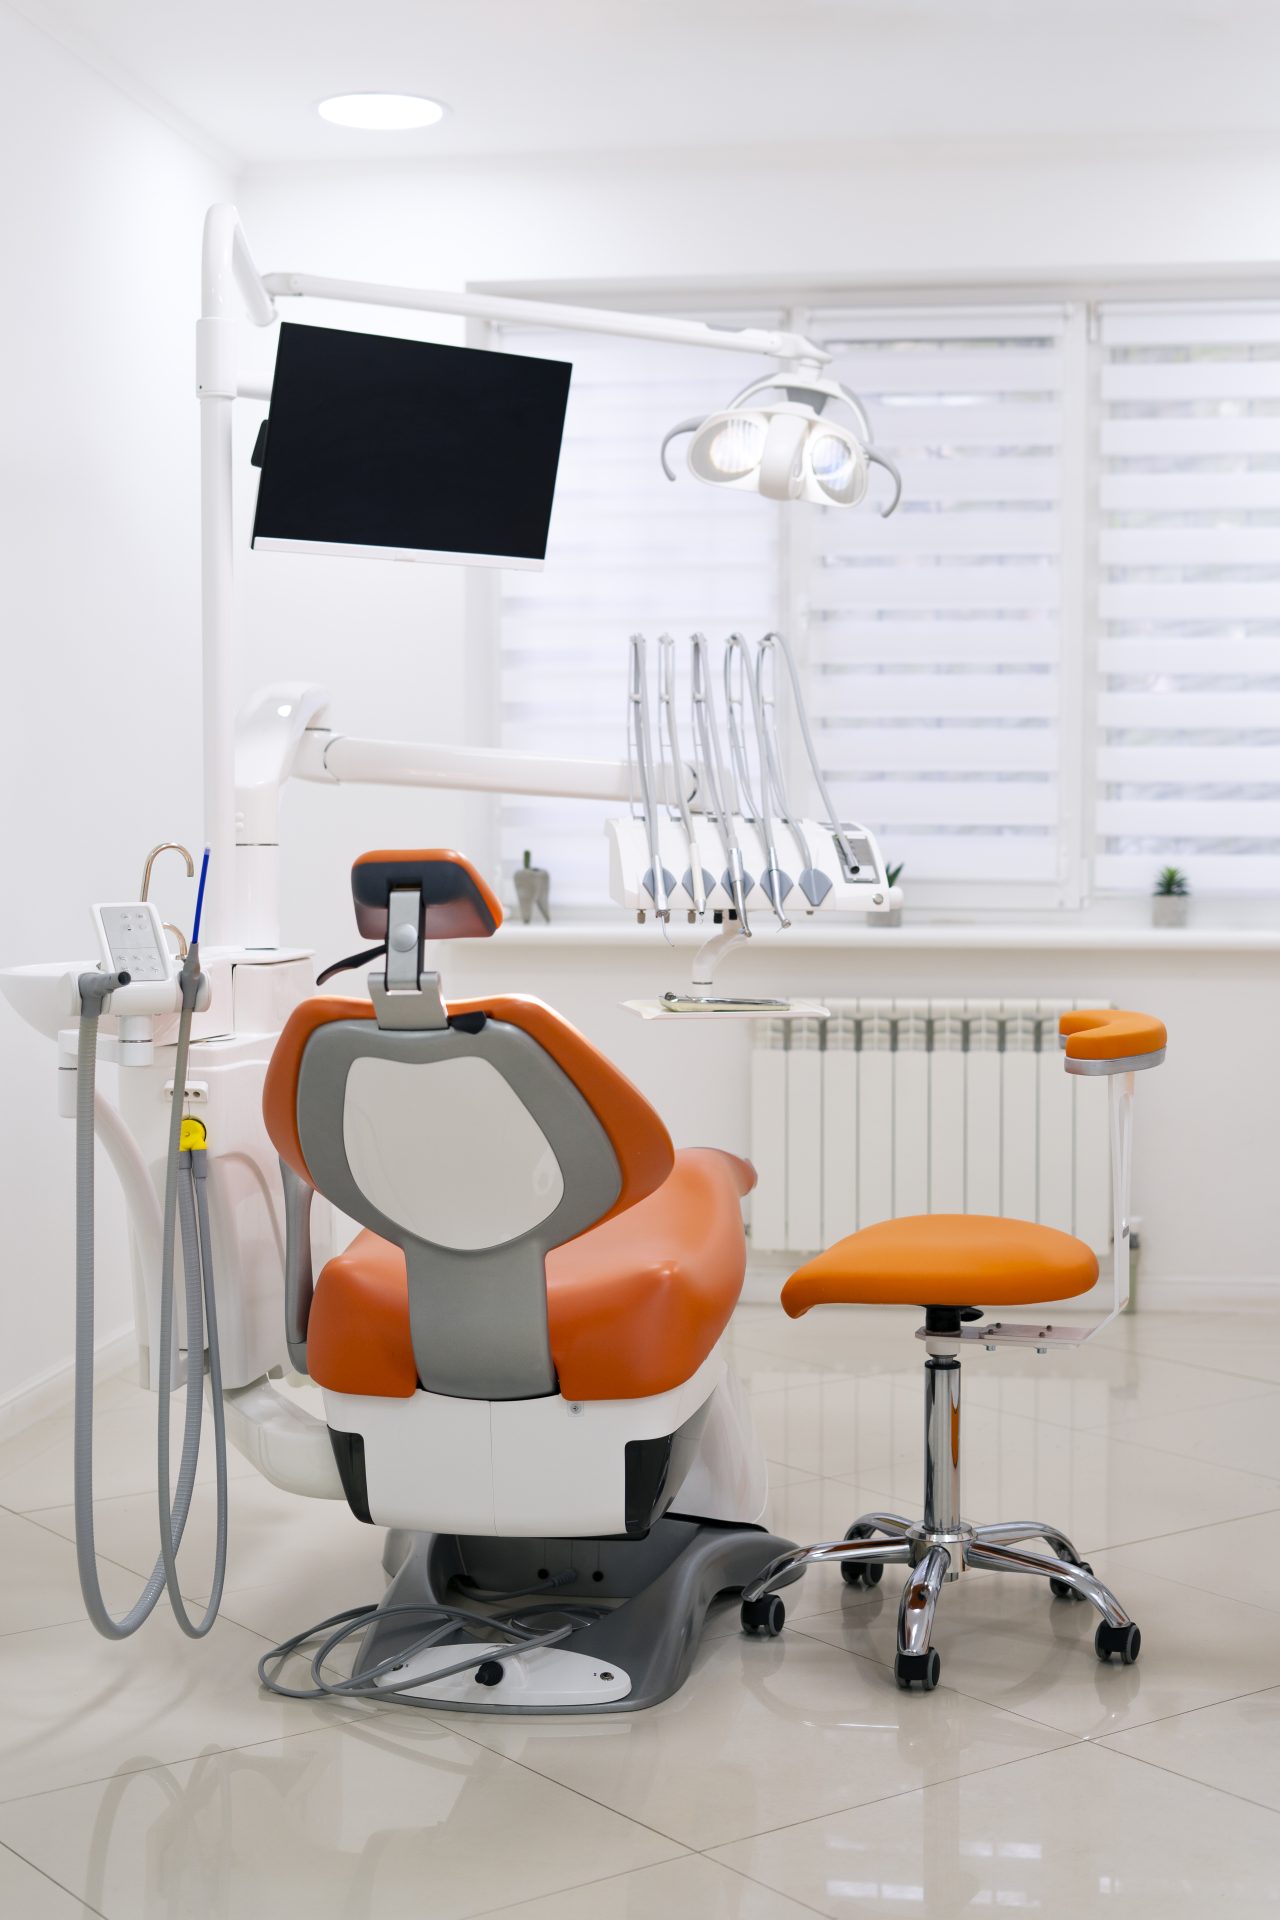 Cadeira odontológica laranja no consultório 